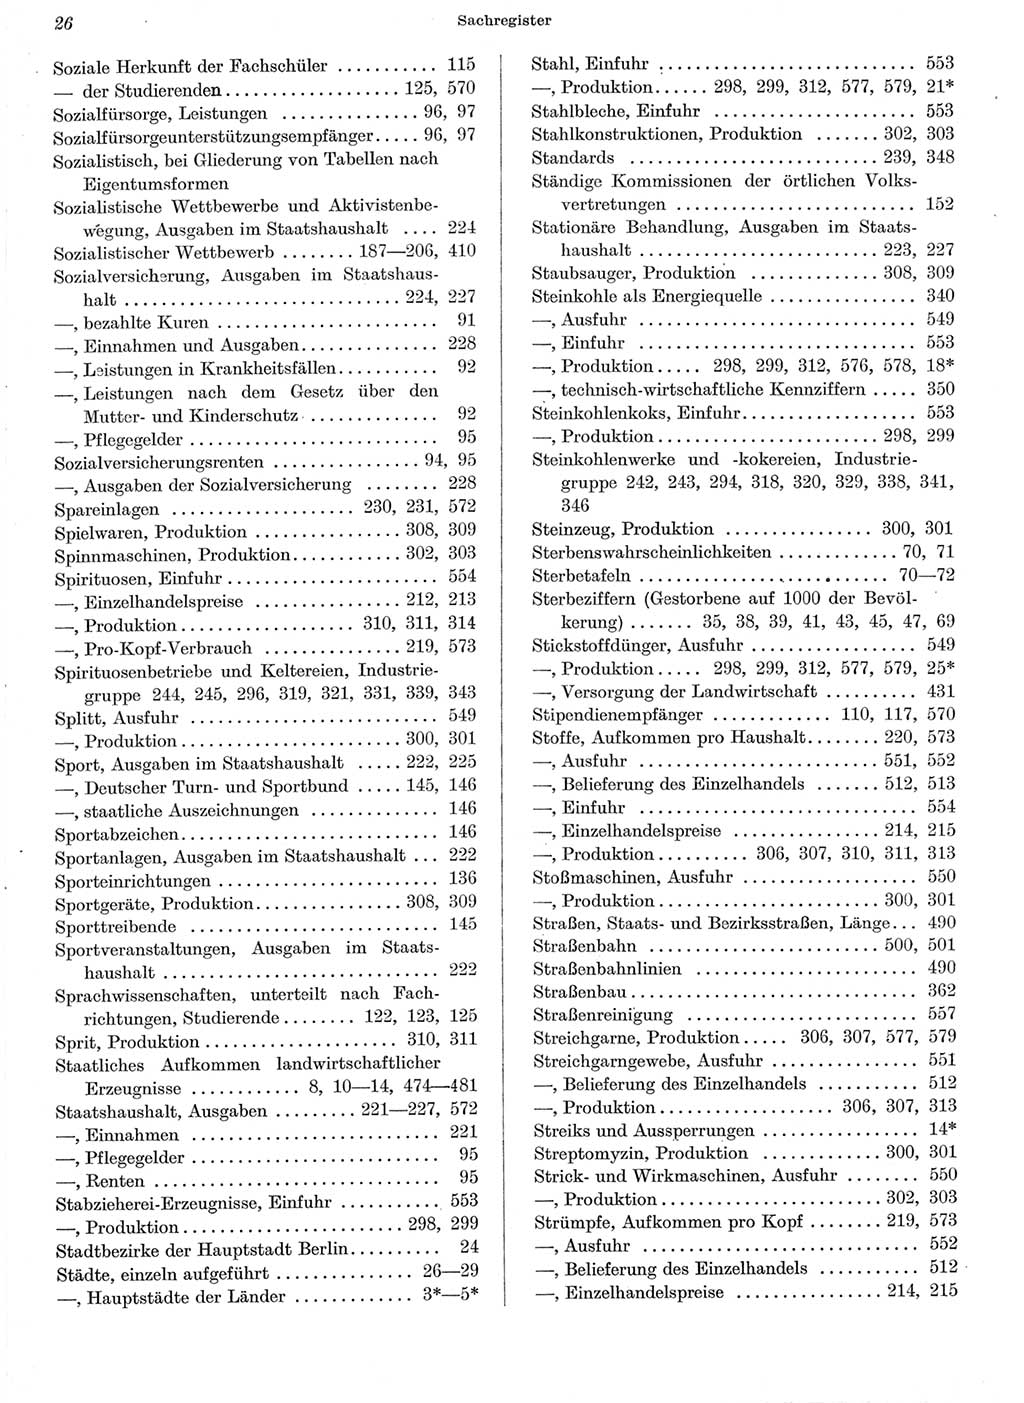 Statistisches Jahrbuch der Deutschen Demokratischen Republik (DDR) 1962, Seite 26 (Stat. Jb. DDR 1962, S. 26)